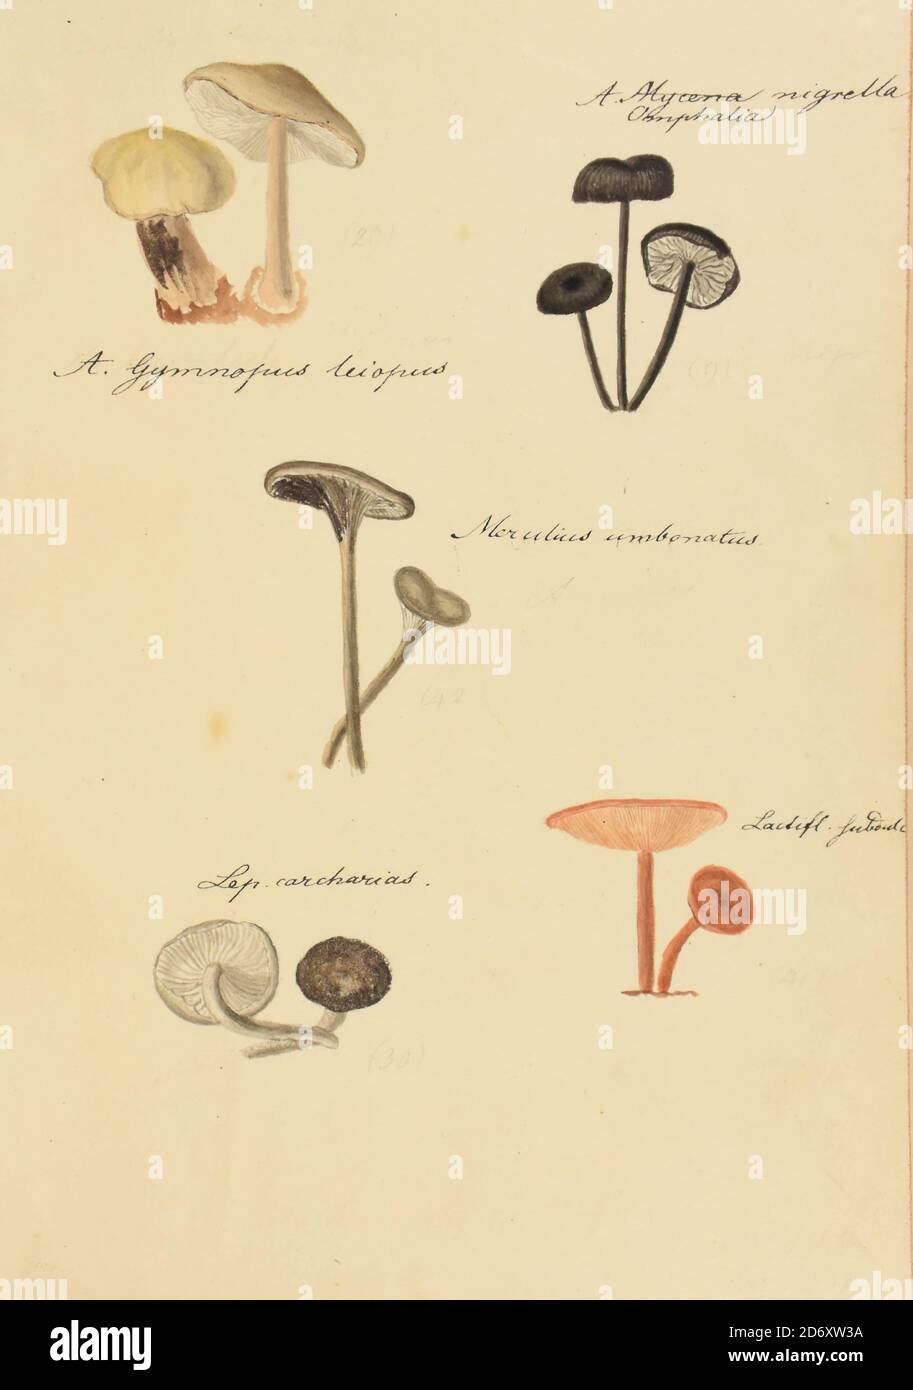 Handgemalte Illustration nordamerikanischer Pilze aus dem Buch 'Icones fungorum Niskiensium' von Schweinitz, Lewis David von, 1780-1834 Erscheinungsdatum 1805. Lewis David de Schweinitz (13. Februar 1780 – 8. Februar 1834) war ein deutsch-amerikanischer Botaniker und Mykologe. Er wird von einigen als der "Vater der nordamerikanischen Mykologie", sondern auch erhebliche Beiträge zur Botanik. Stockfoto